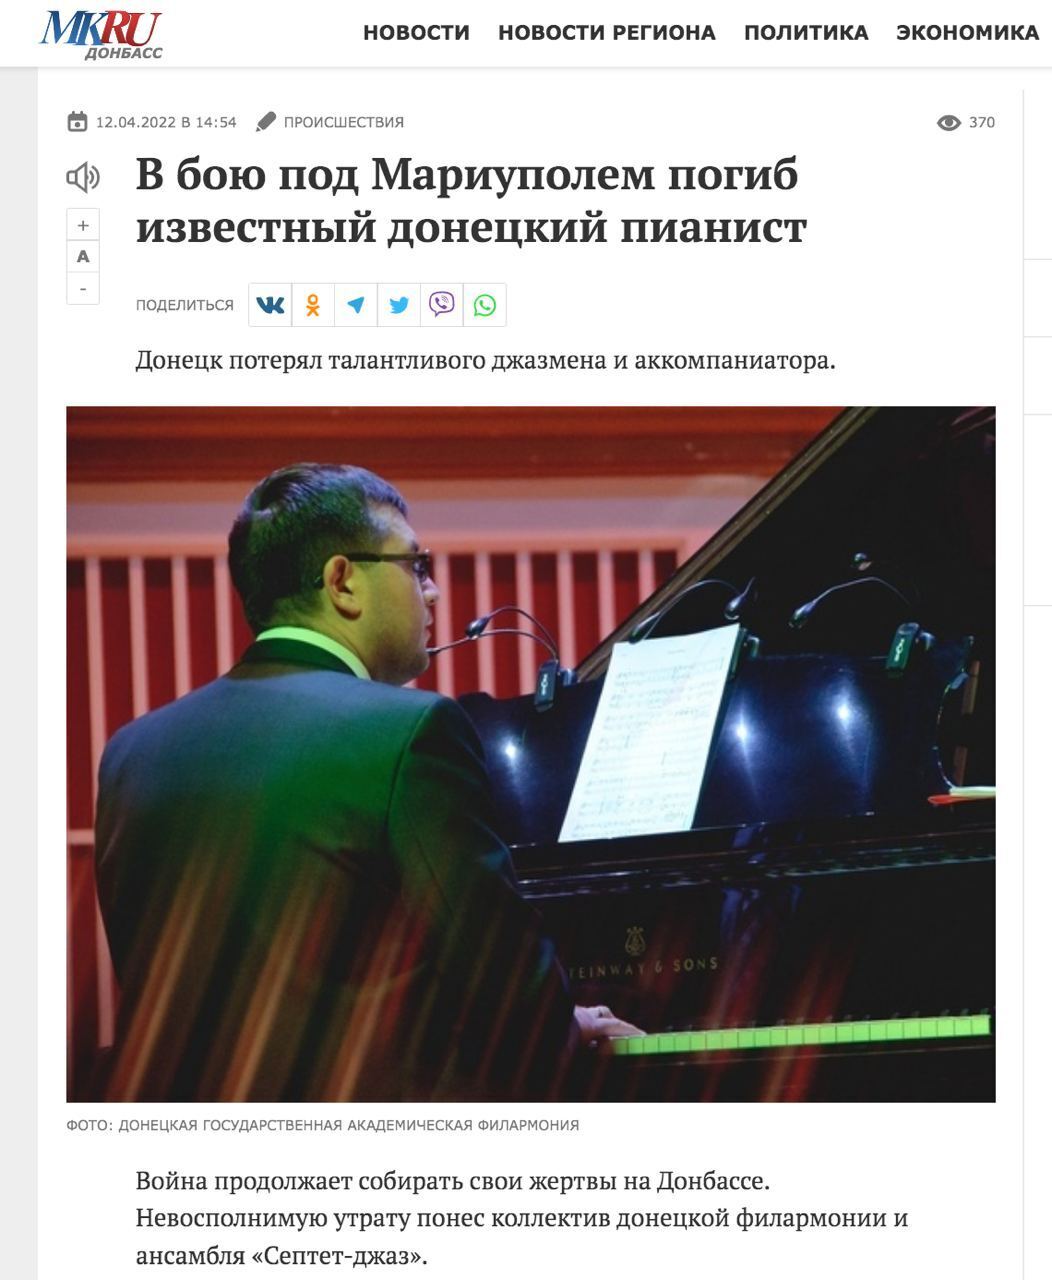 Російське видання "MK.RU" написало про загибель під Маріуполем донецького музиканта